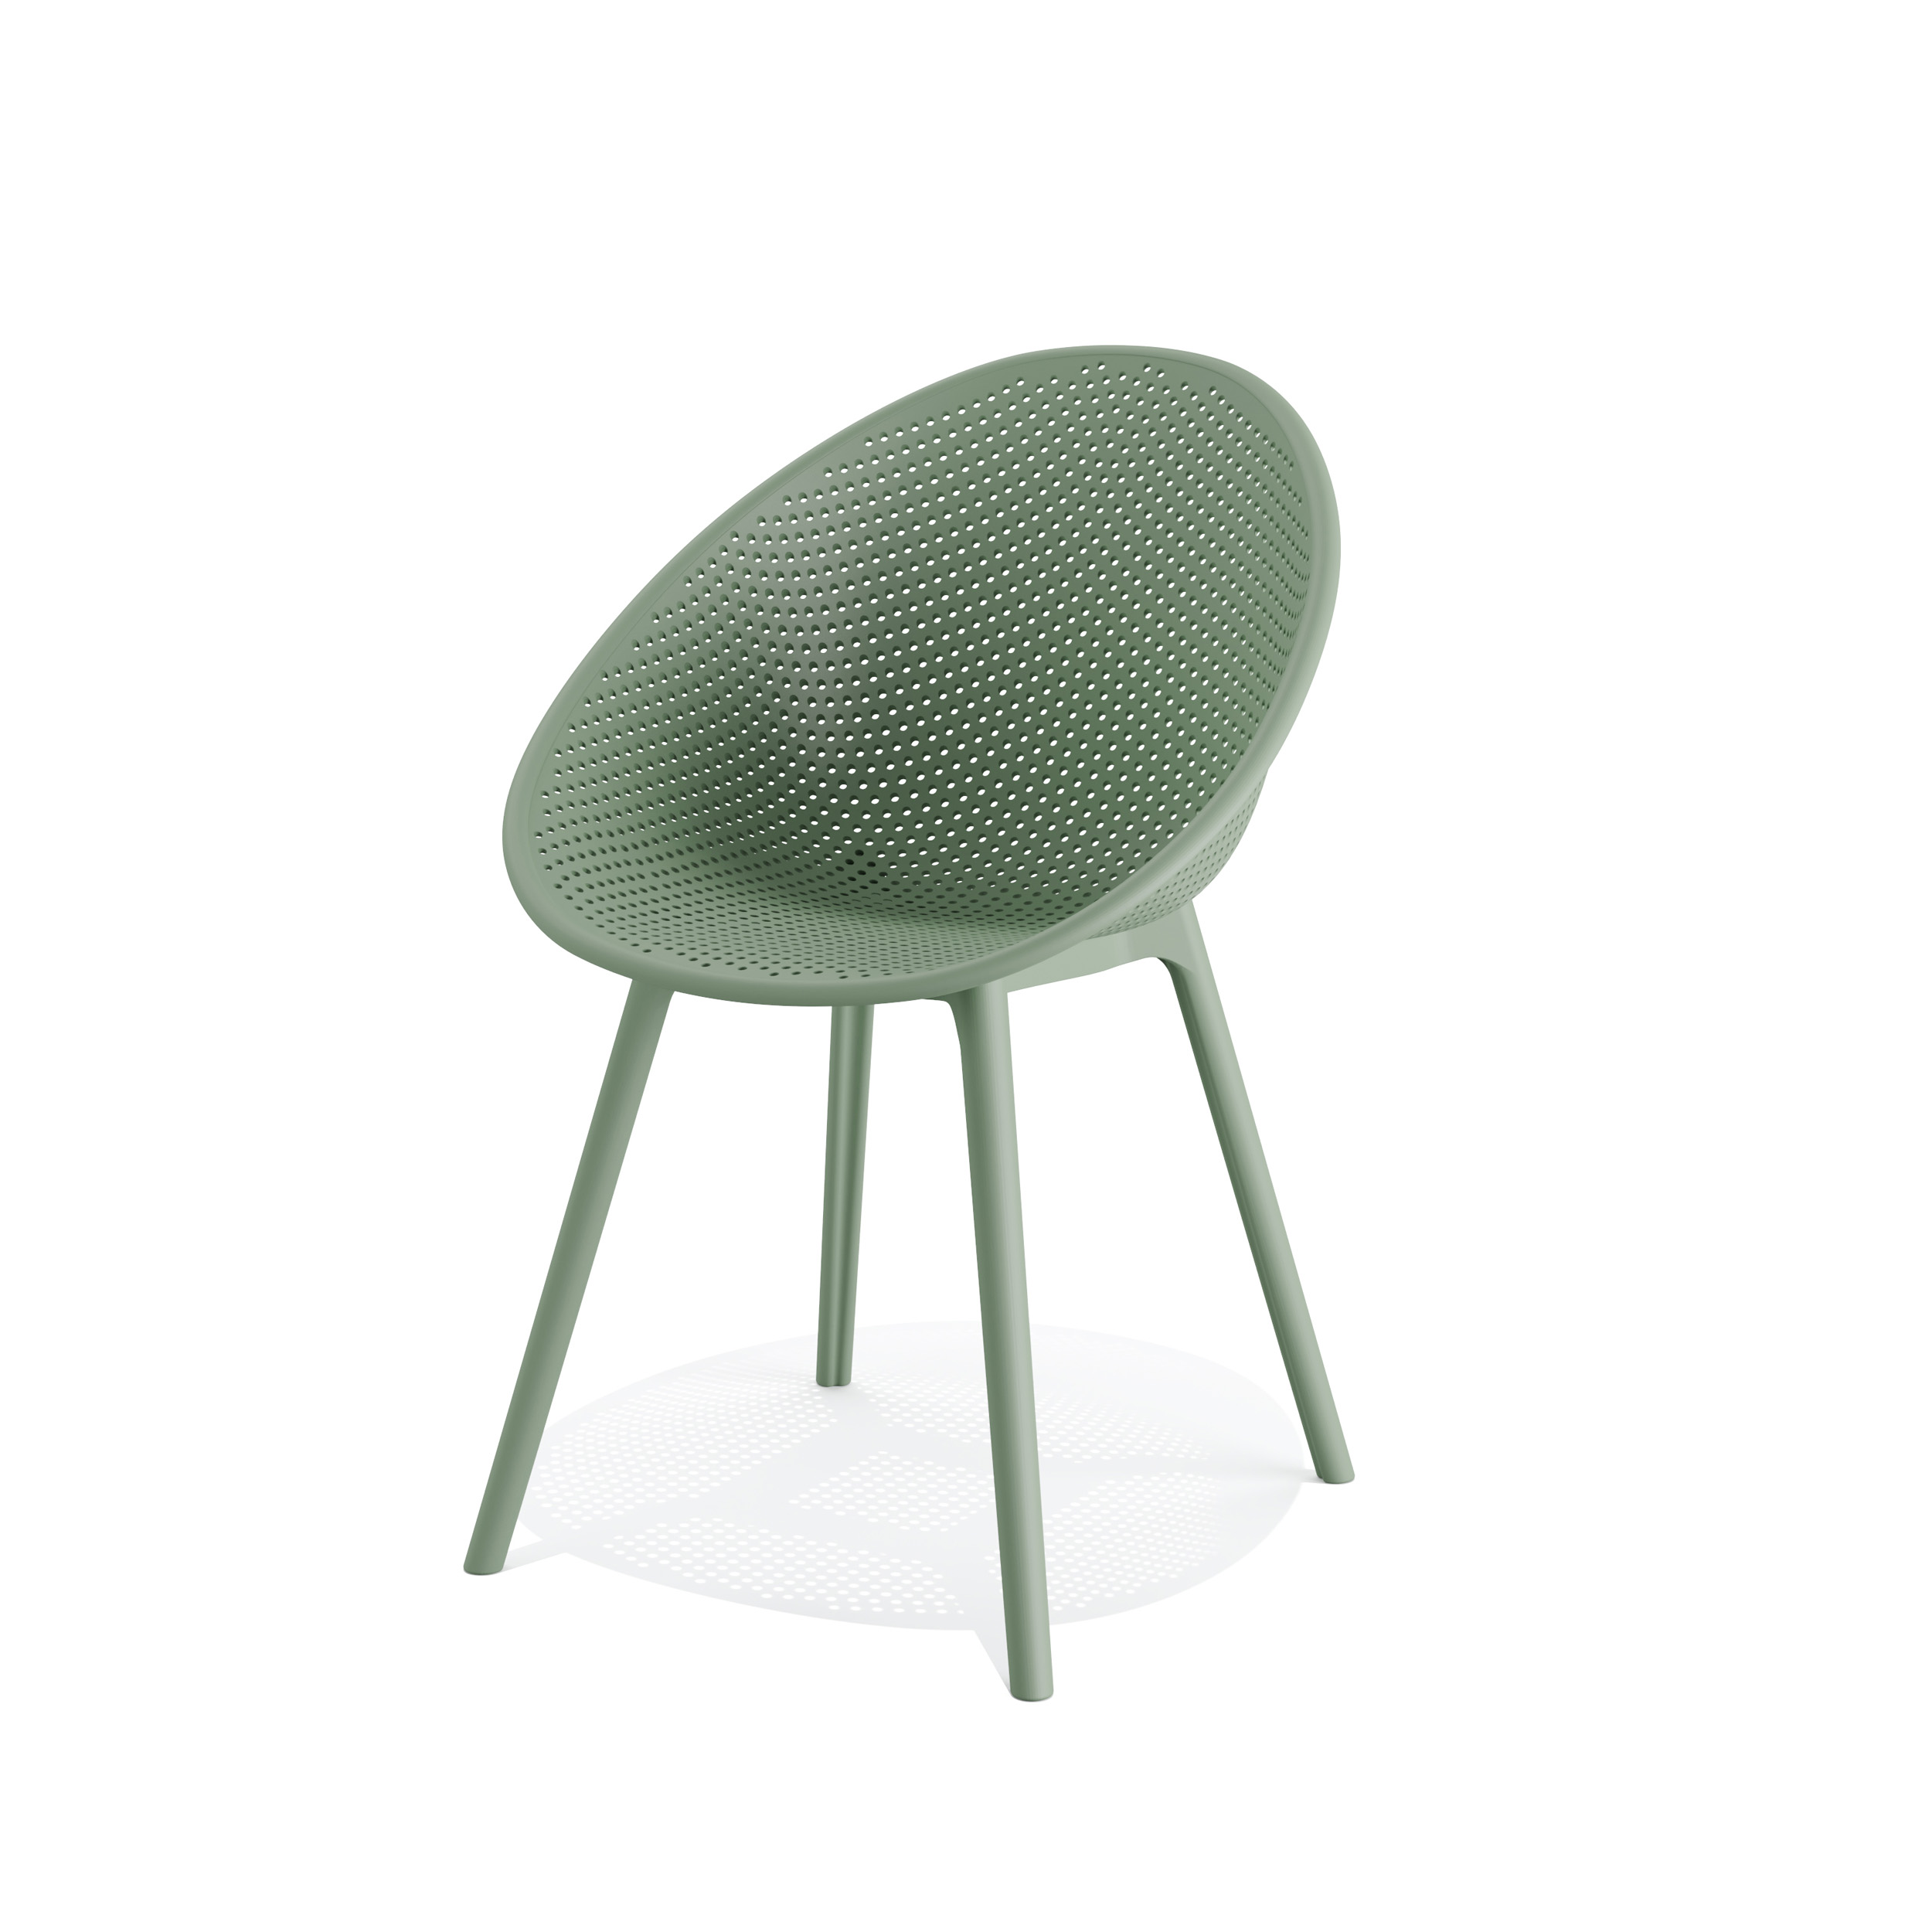 Qosy outdoor stoel - groen